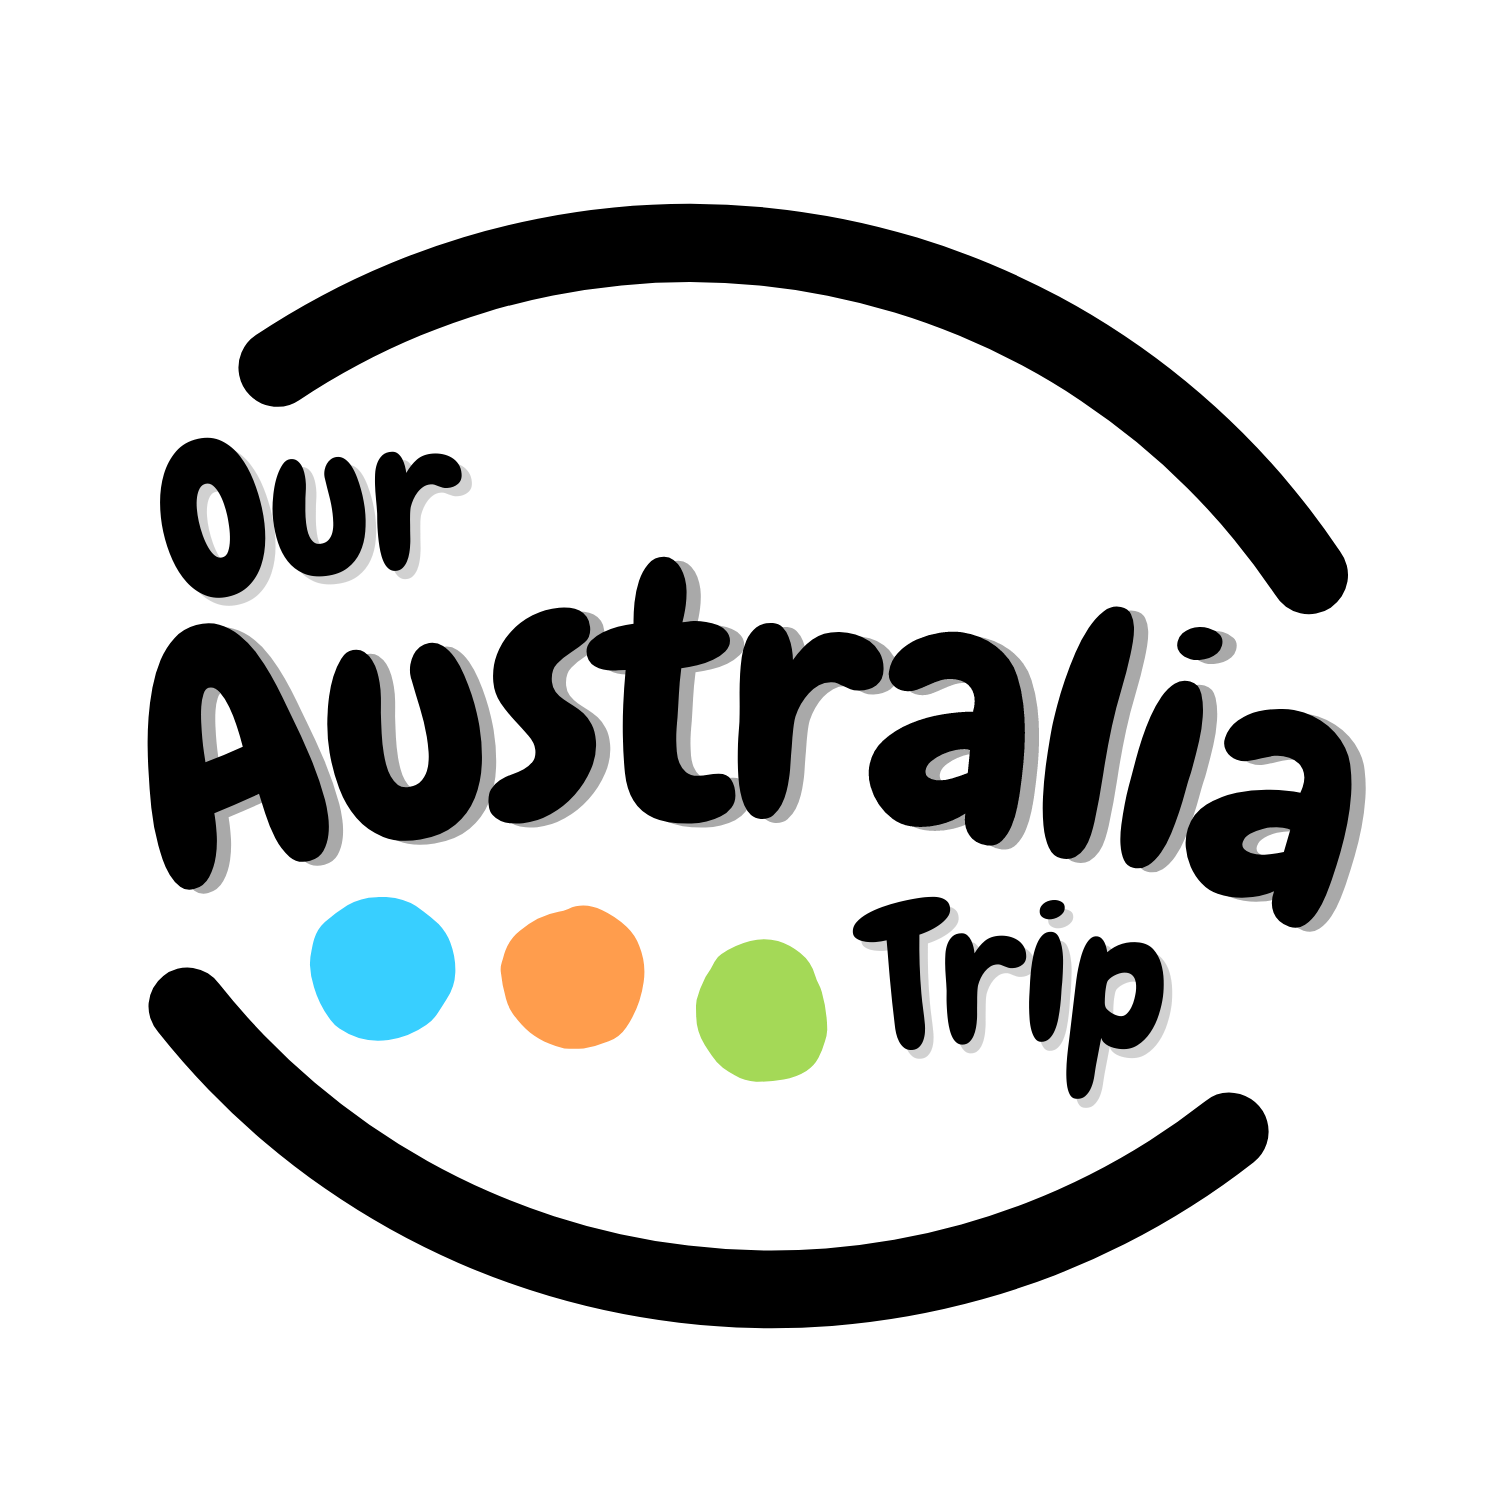 Our Australia Trip